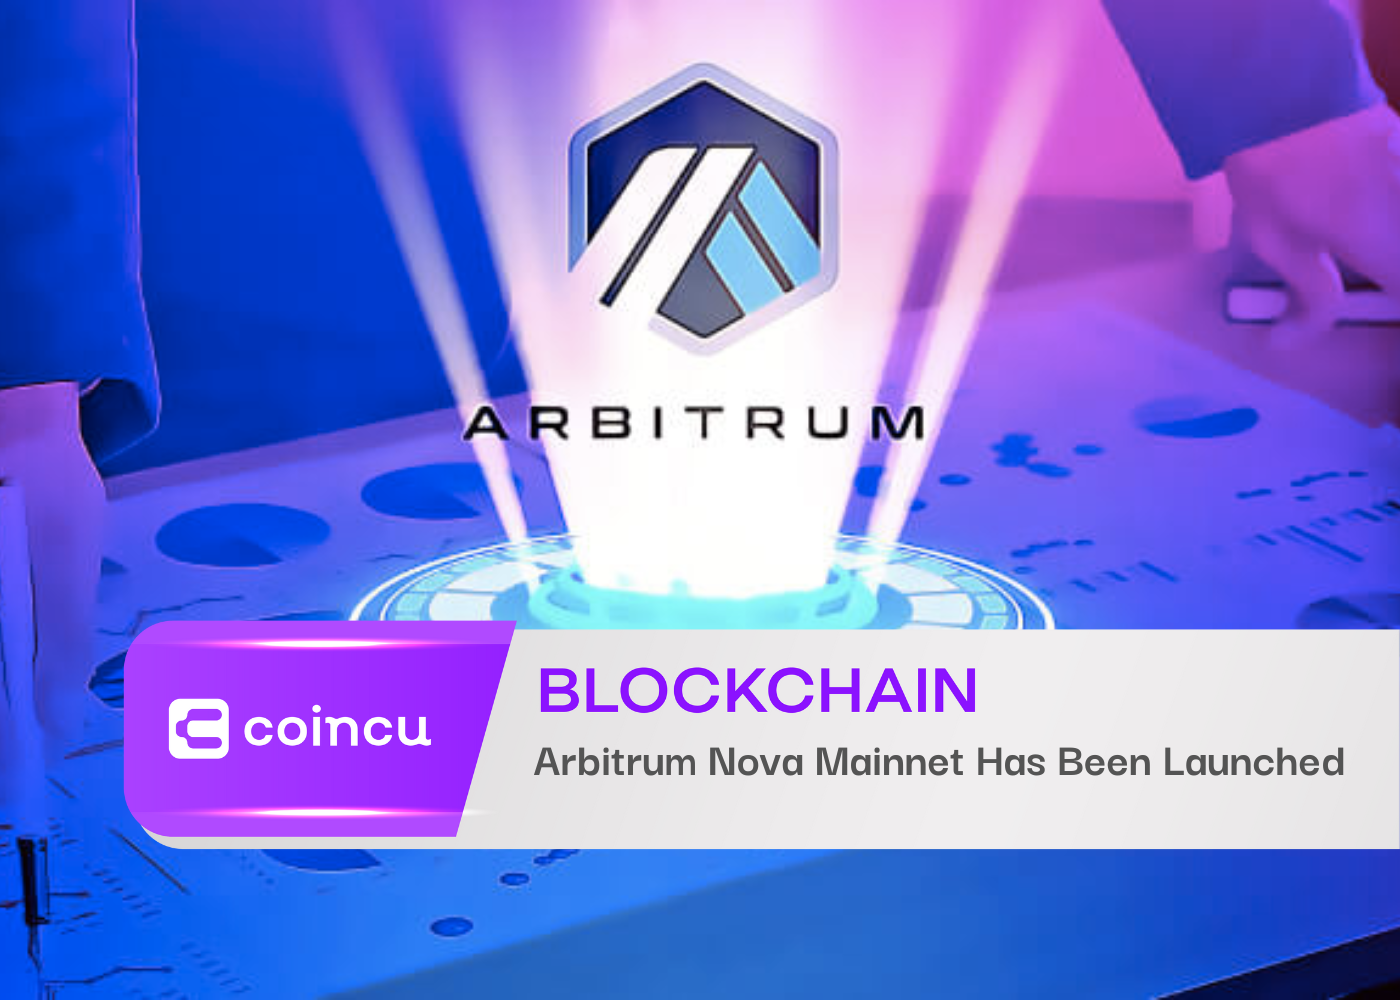 Arbitrum Nova Mainnet Has Been Launched